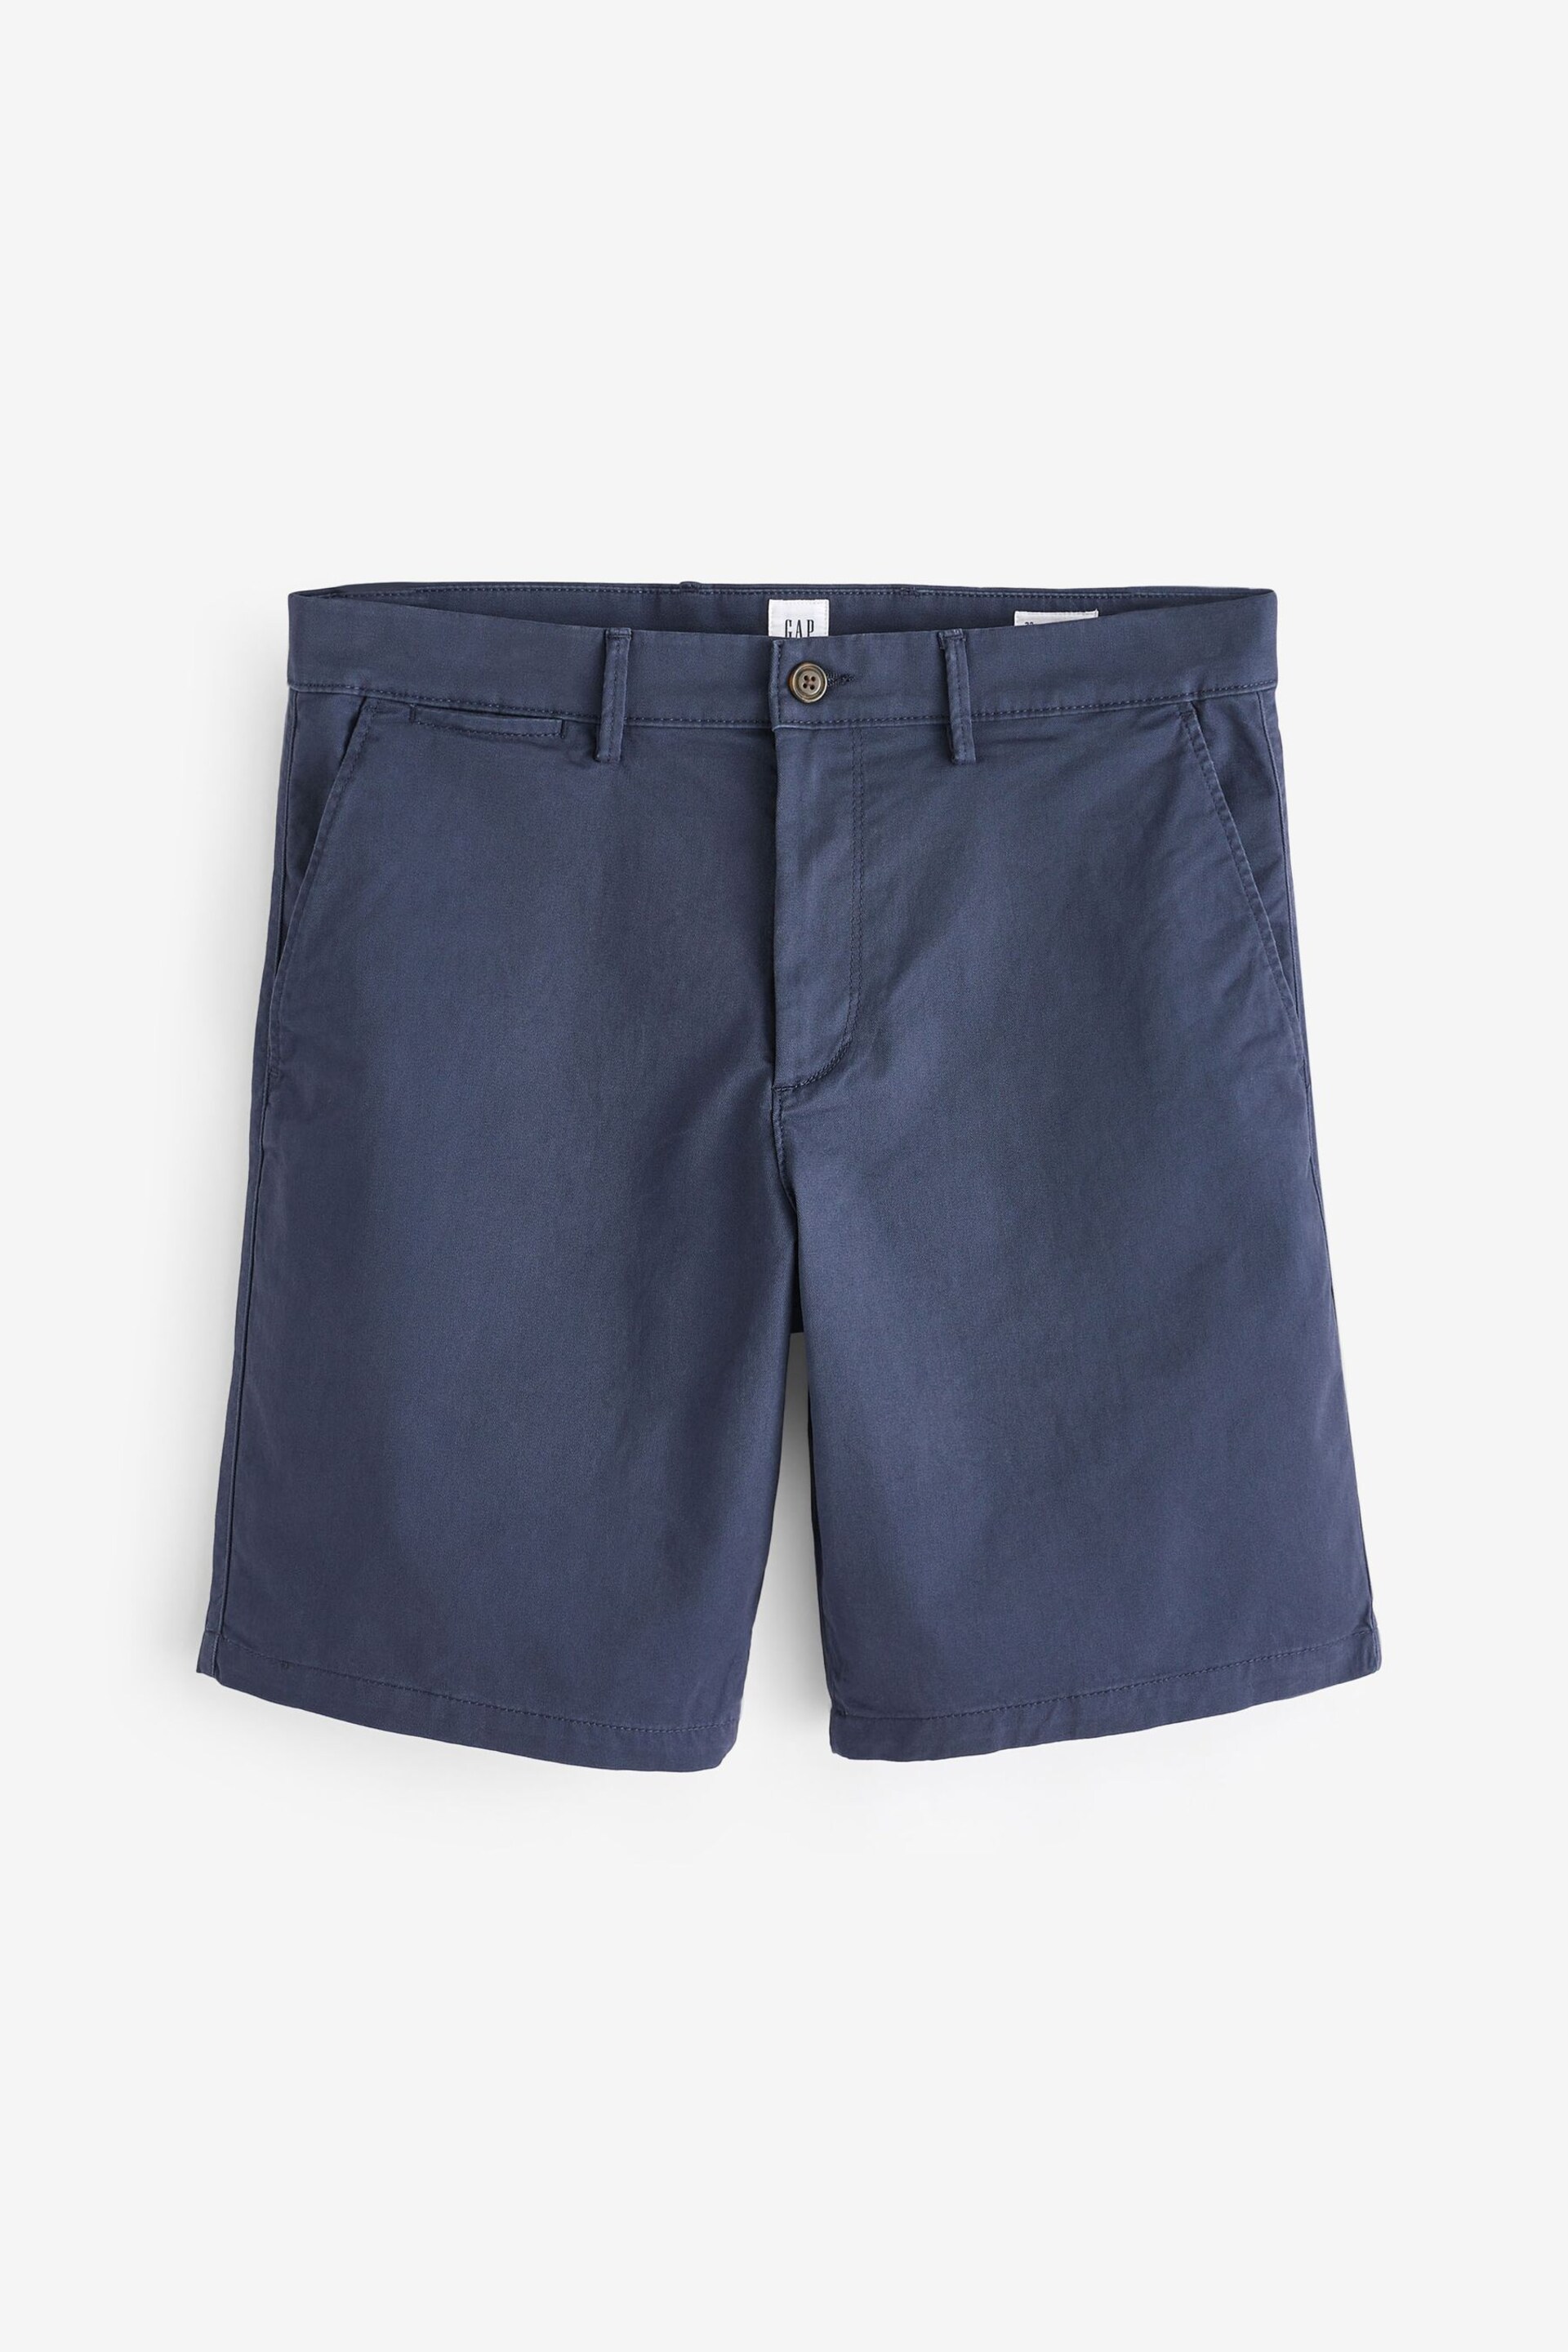 Gap Navy Blue Long Length Chino Shorts - Image 3 of 6